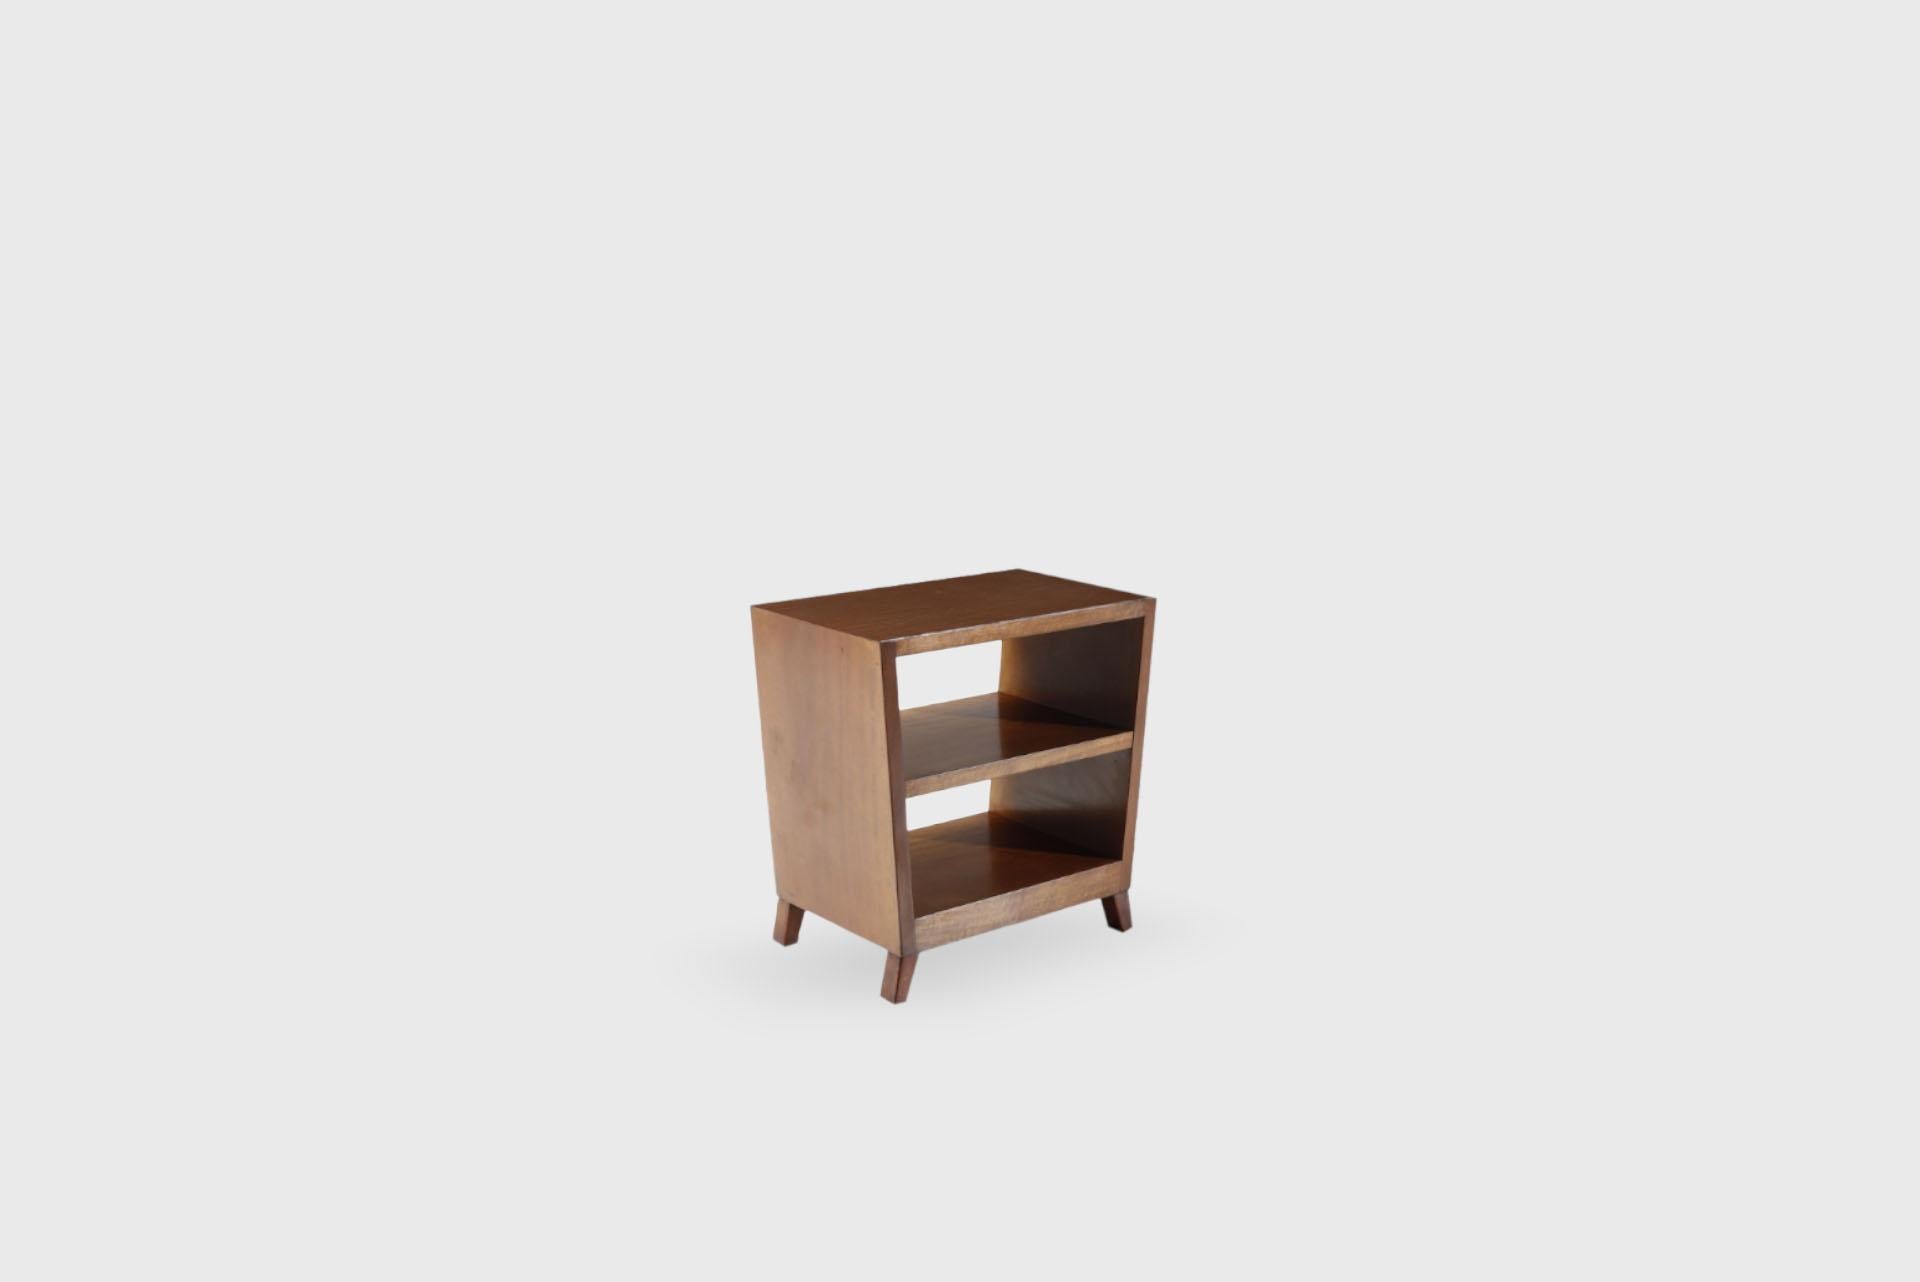 Small bookcase 1950s
50 cm x 30 cm x 50h cm
19,68 in x 11,81 in x 19,68 h in

Style
Italian, Vintage, Mid-Century

